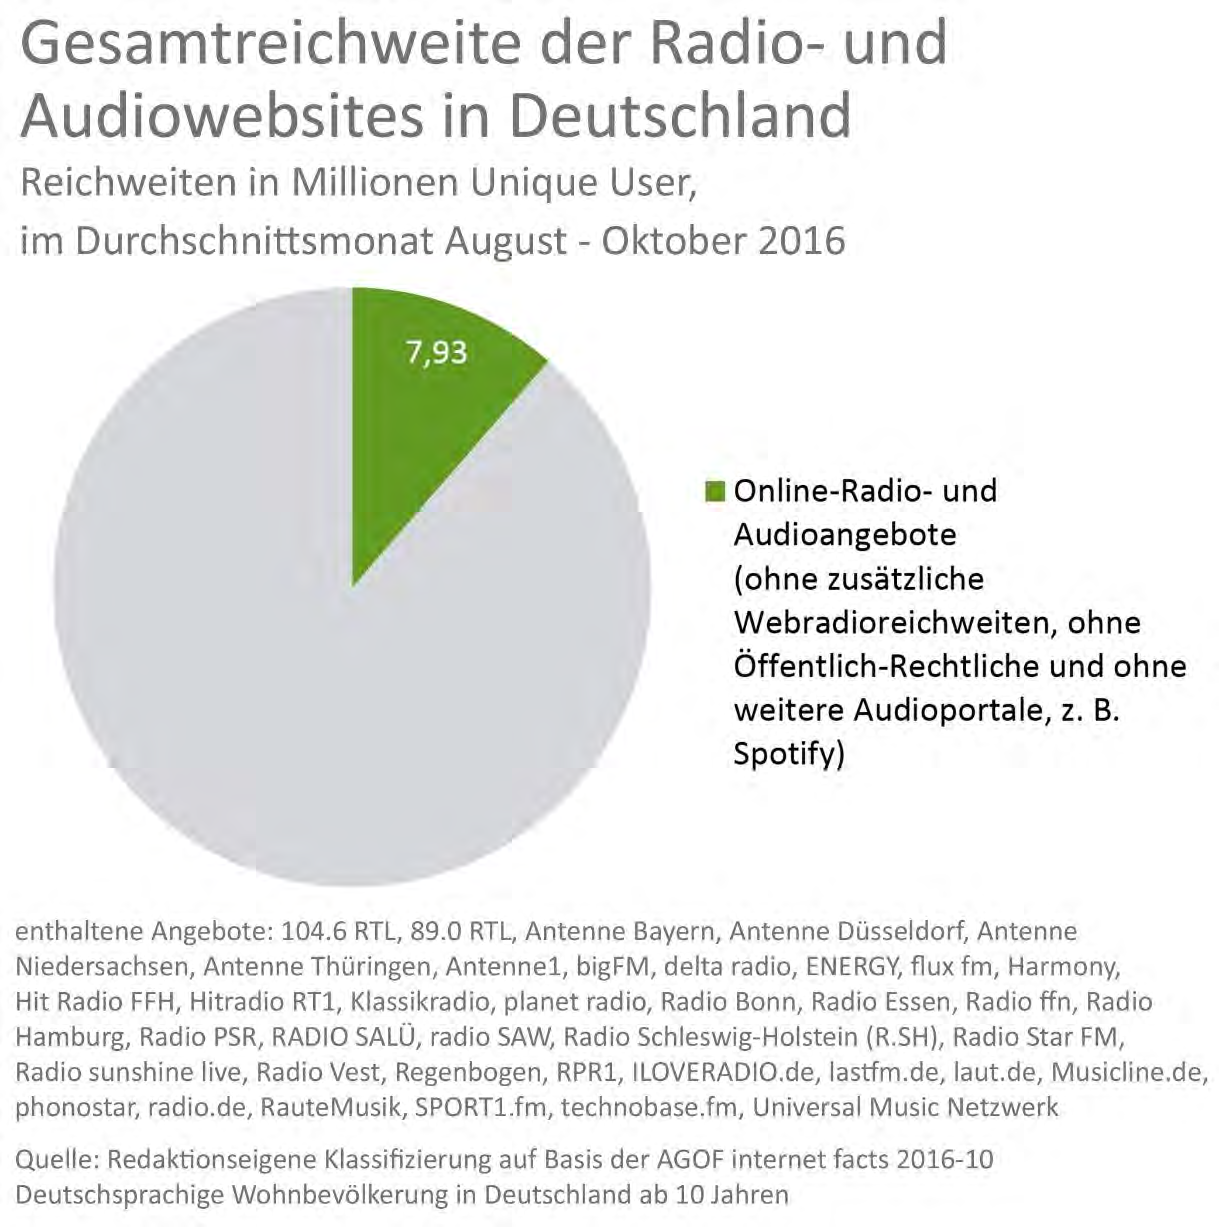 Radio- und Audiowebsites Radio- und Audiowebsites Die erfasstem privaten Radio- und Audioportale hatten im durchschnittlichen Monat (August Oktober 2016) eine gemeinsame Nettoreichweite von insgesamt